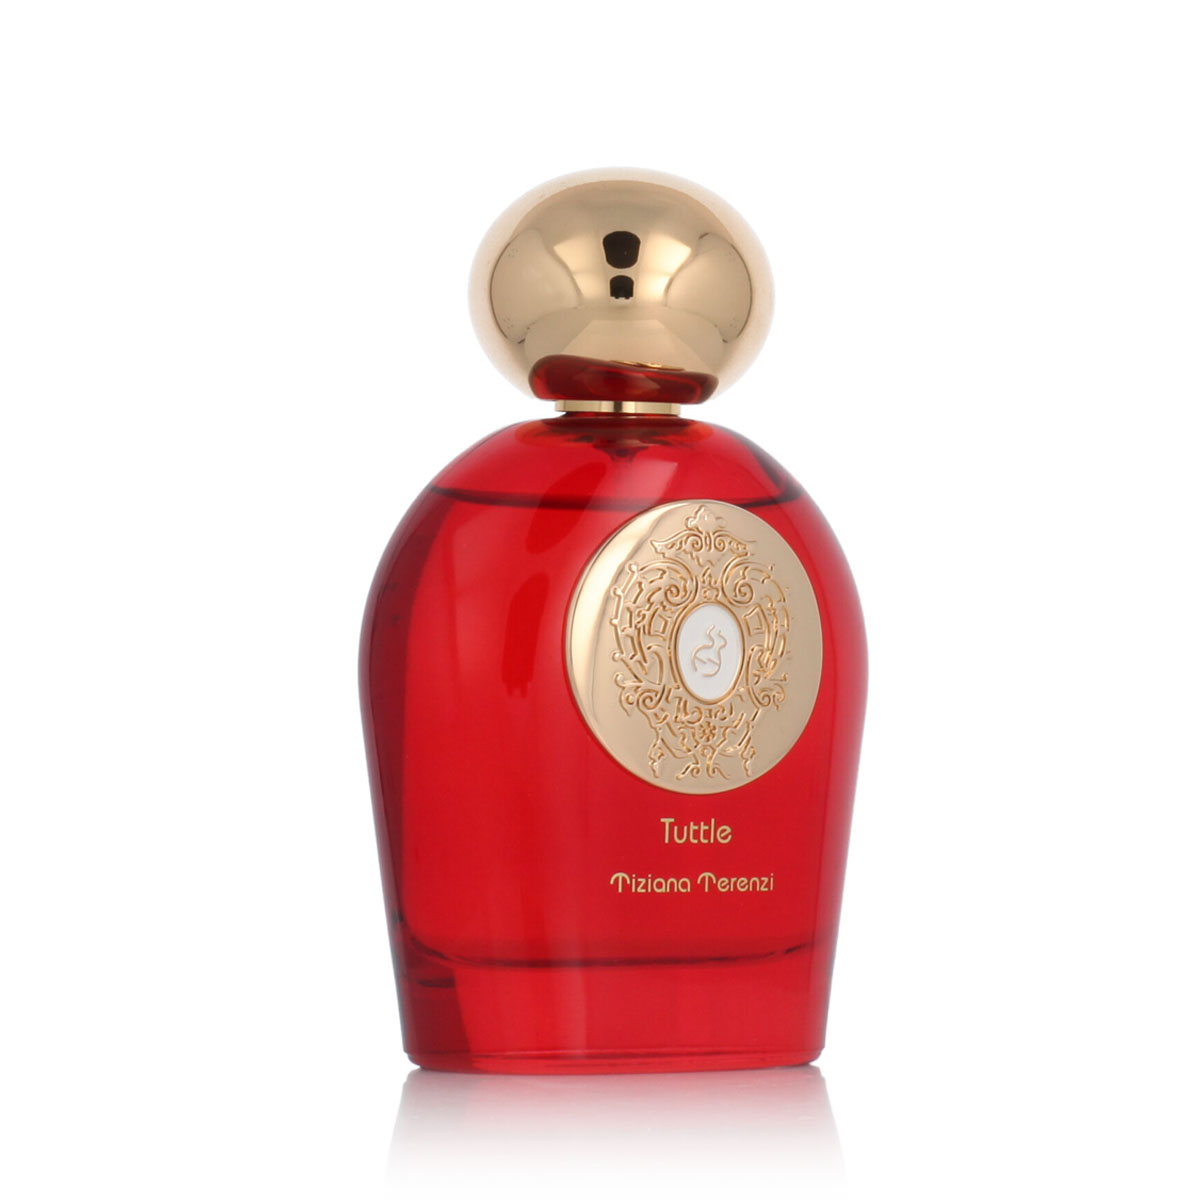 Tiziana Terenzi Tuttle 5 ml NIŠINIAI kvepalų mėginukas (atomaizeris) Unisex Parfum